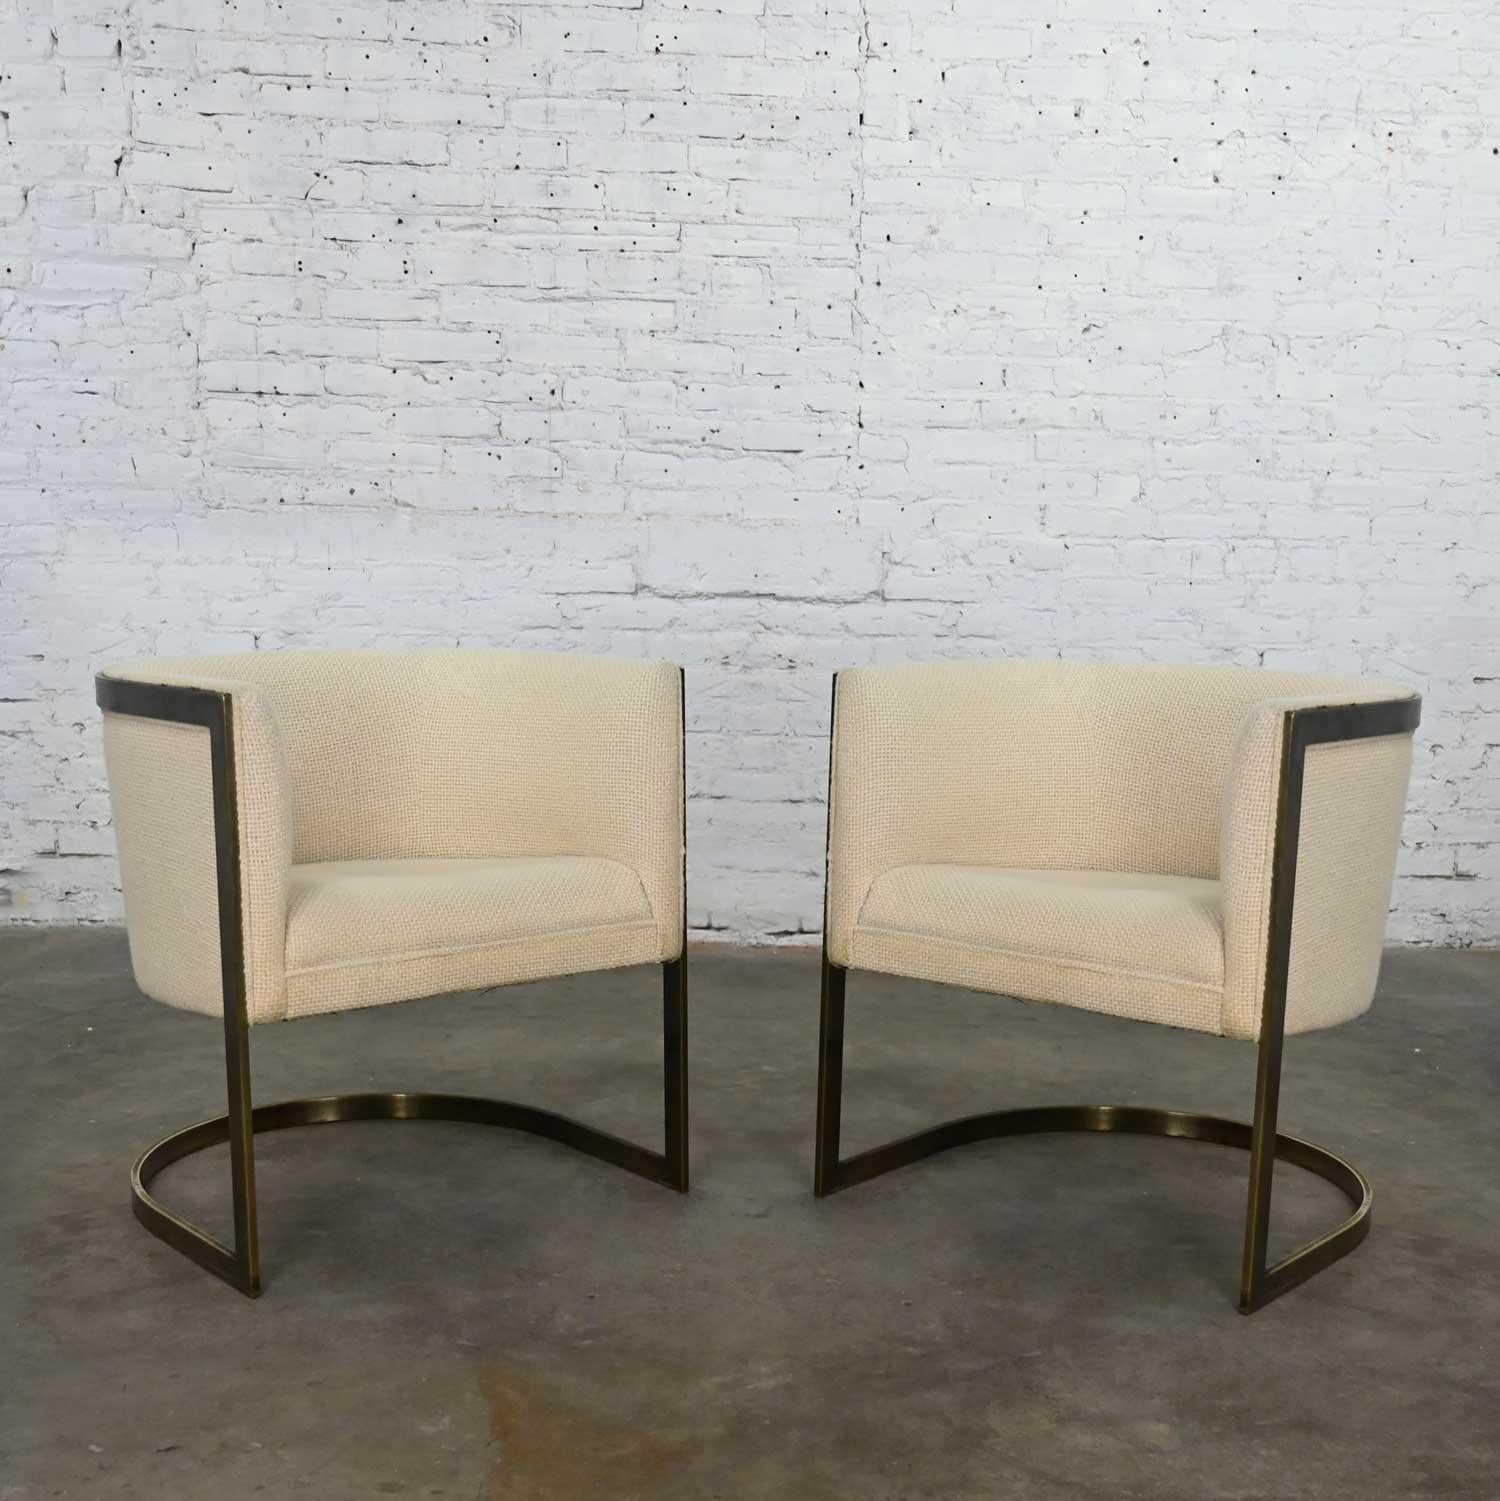 Metropolitan Furn Modern White & Antique Brass Plate Tub Chairs by Jules Heumann For Sale 2